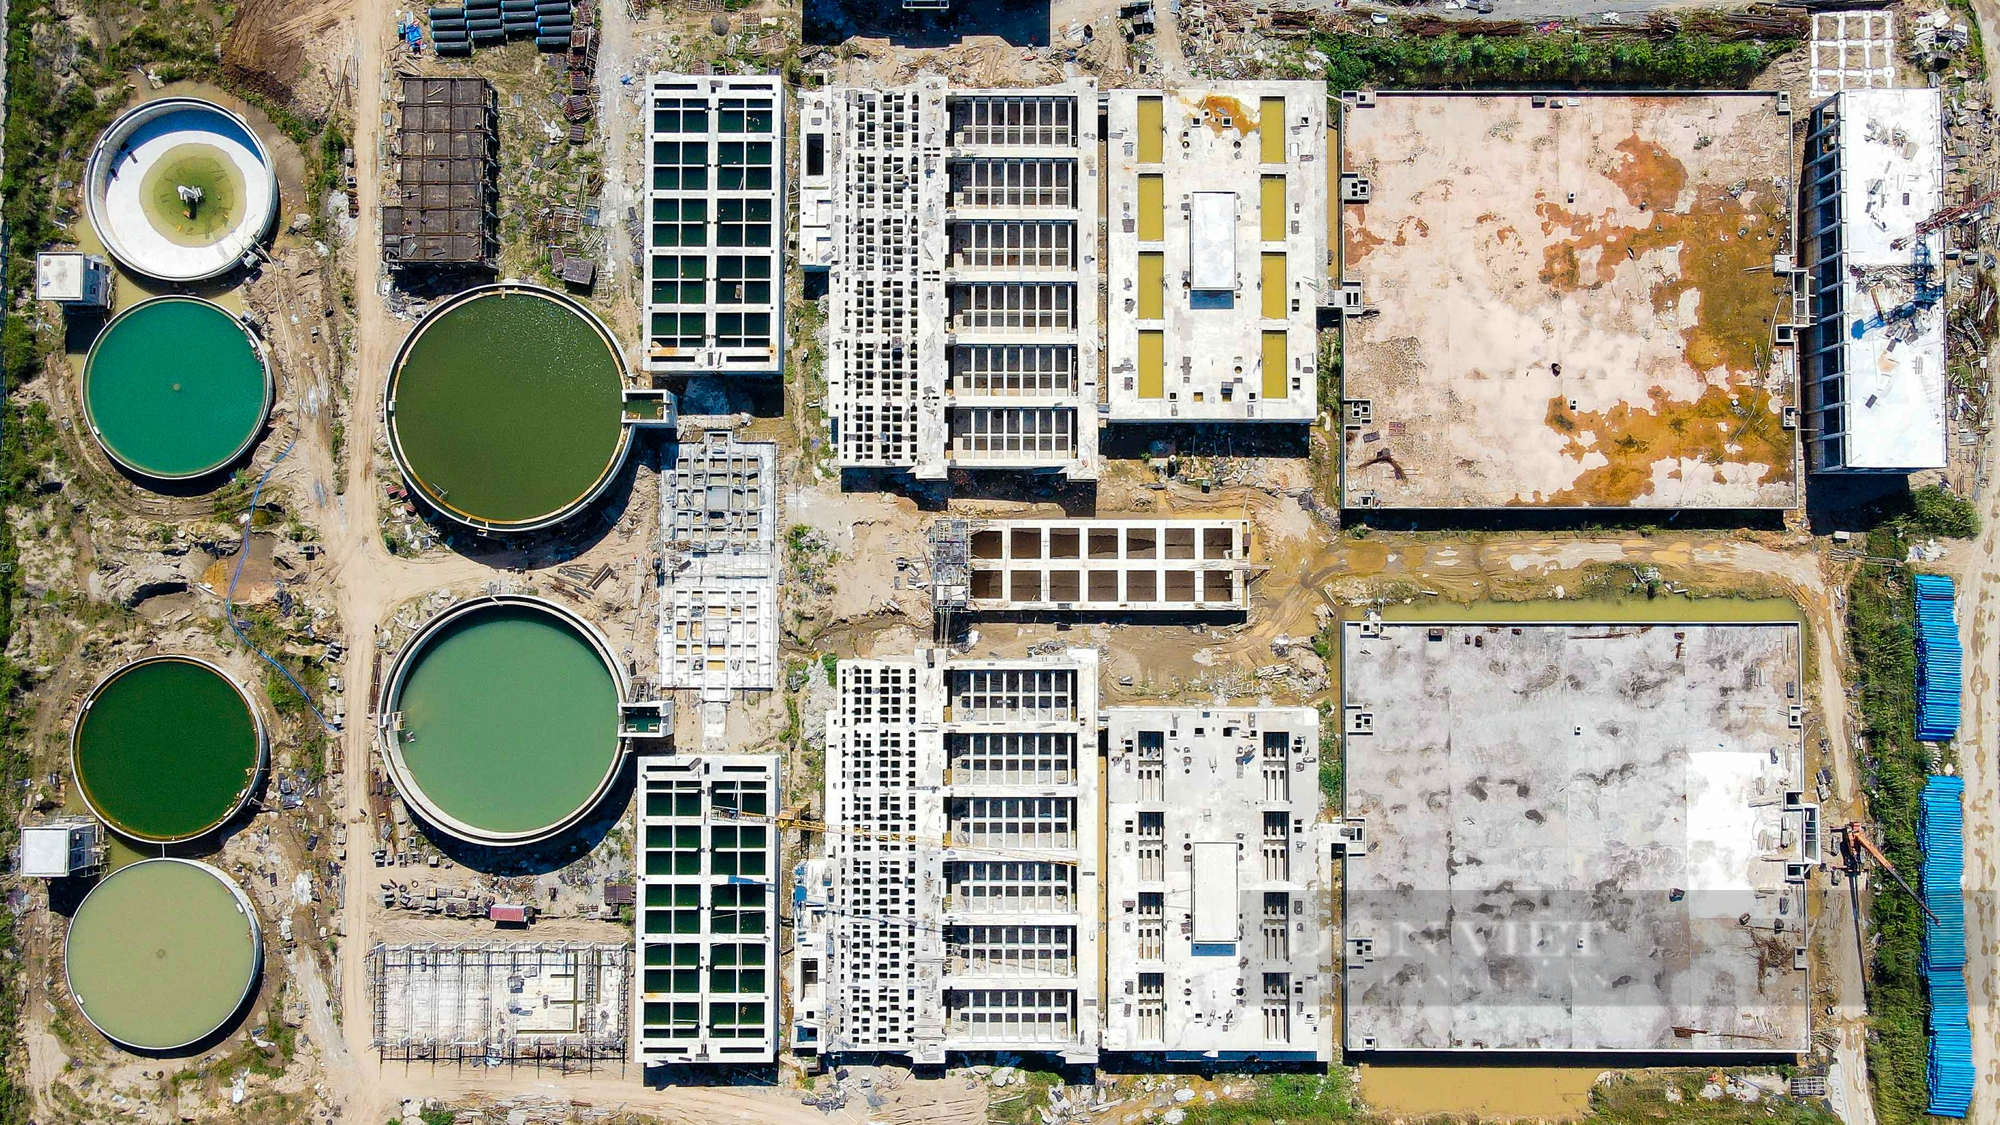 Toàn cảnh nhà máy nước sạch gần 3.700 tỷ chậm tiến độ - Ảnh 11.